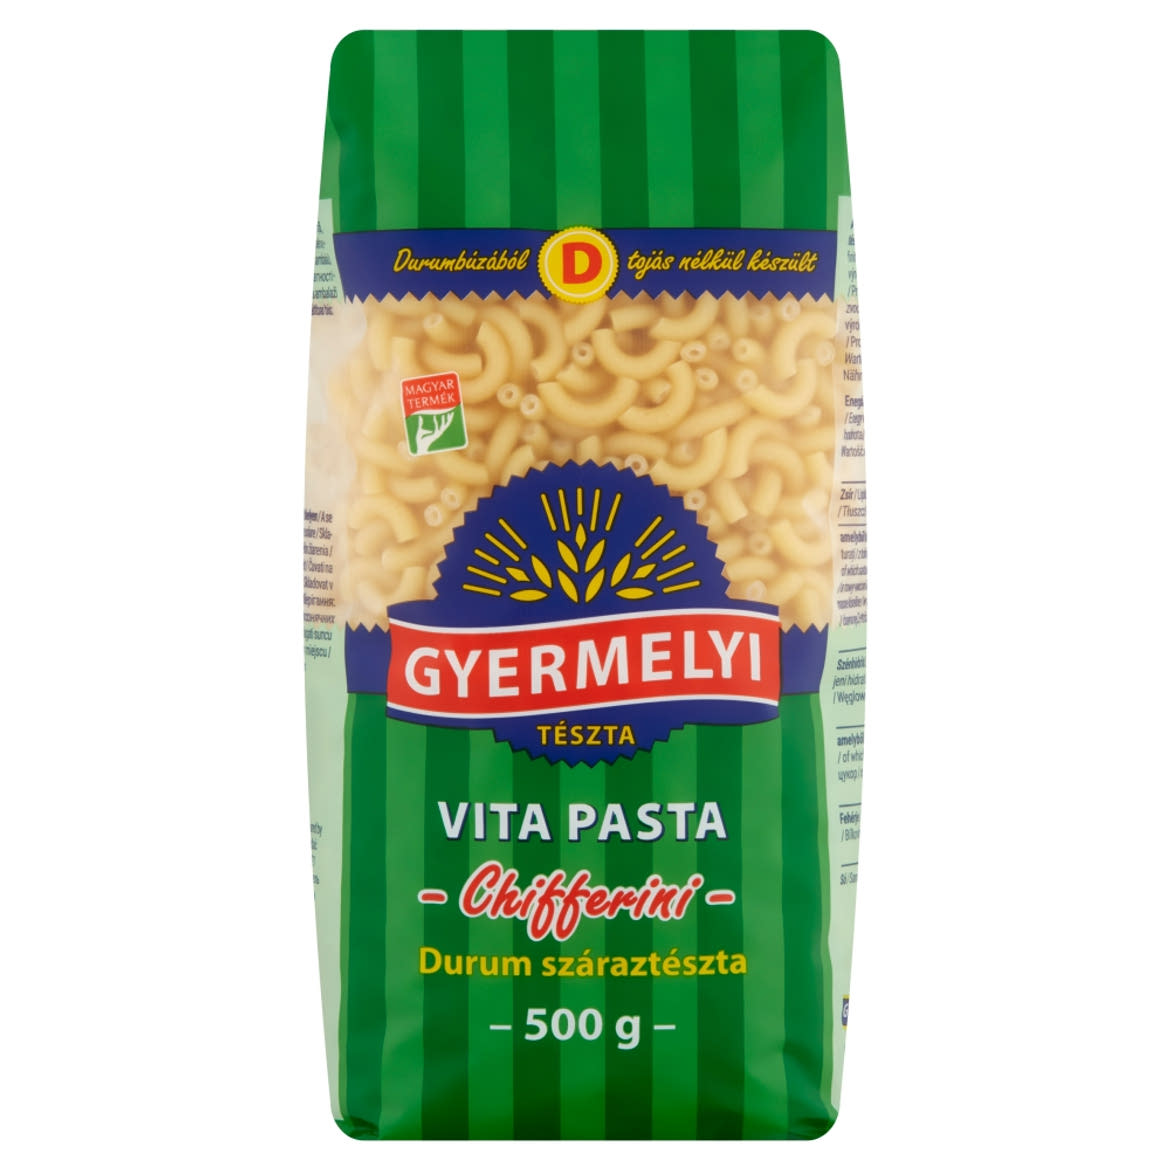 Gyermelyi Vita Pasta Chifferini durum száraztészta